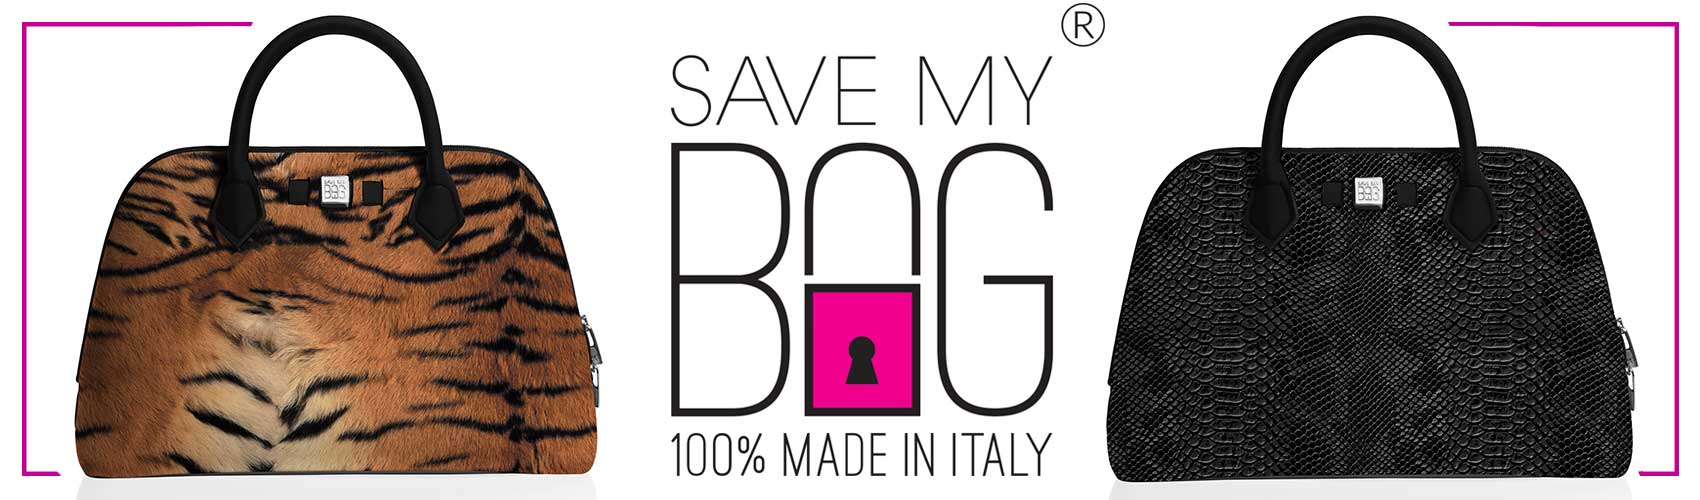 Save My Bag Oct 2018 1